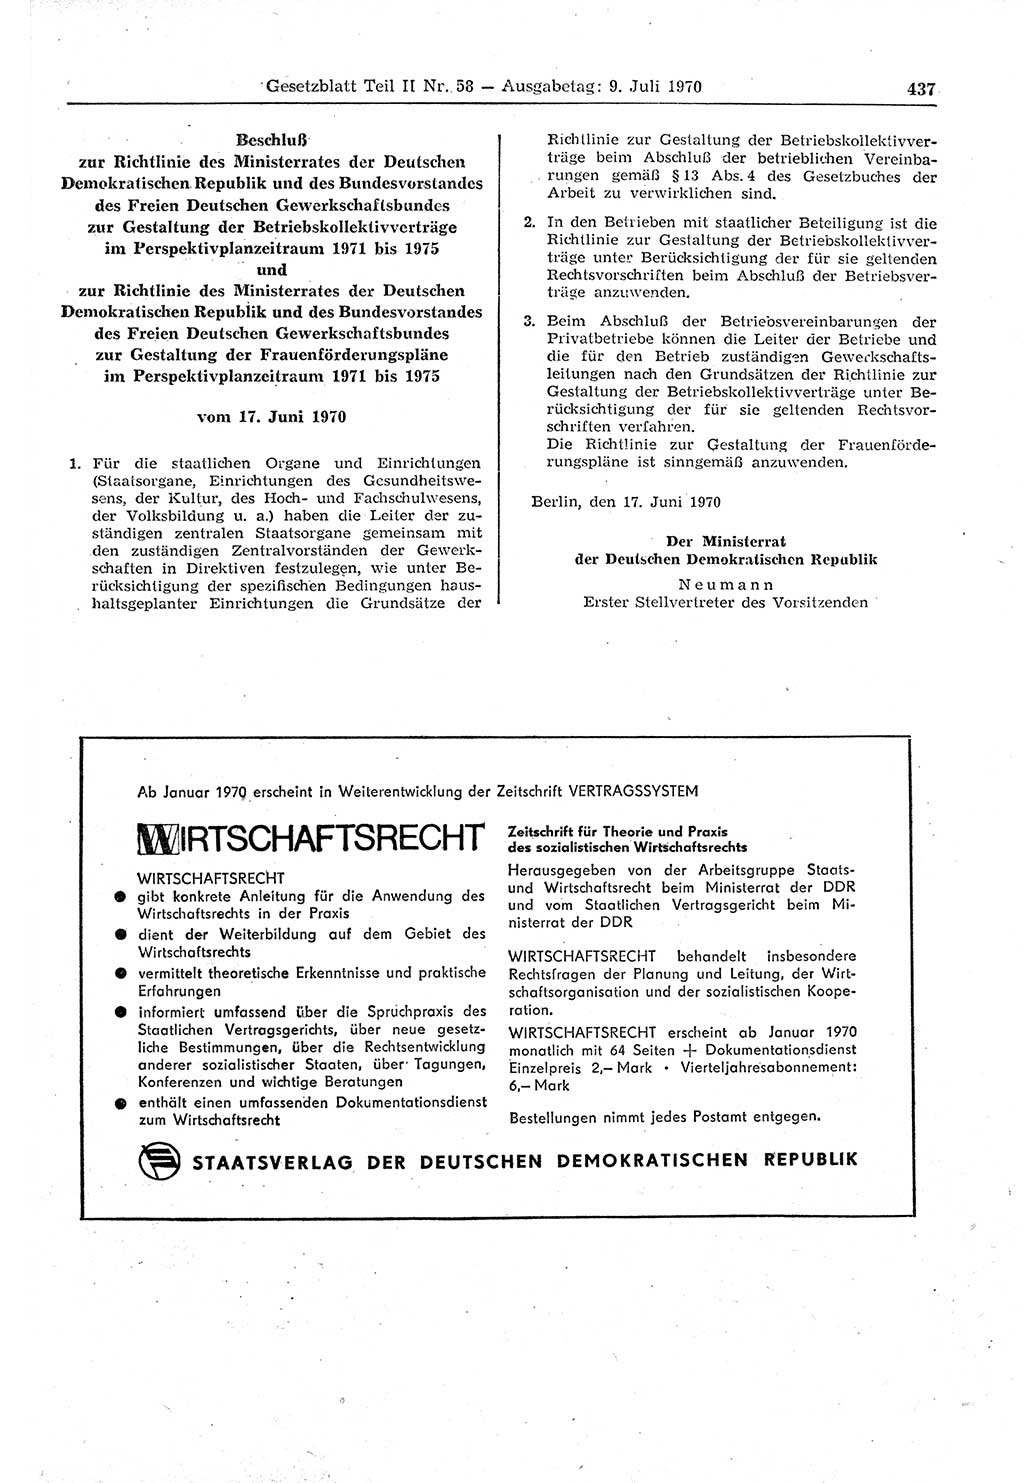 Gesetzblatt (GBl.) der Deutschen Demokratischen Republik (DDR) Teil ⅠⅠ 1970, Seite 437 (GBl. DDR ⅠⅠ 1970, S. 437)